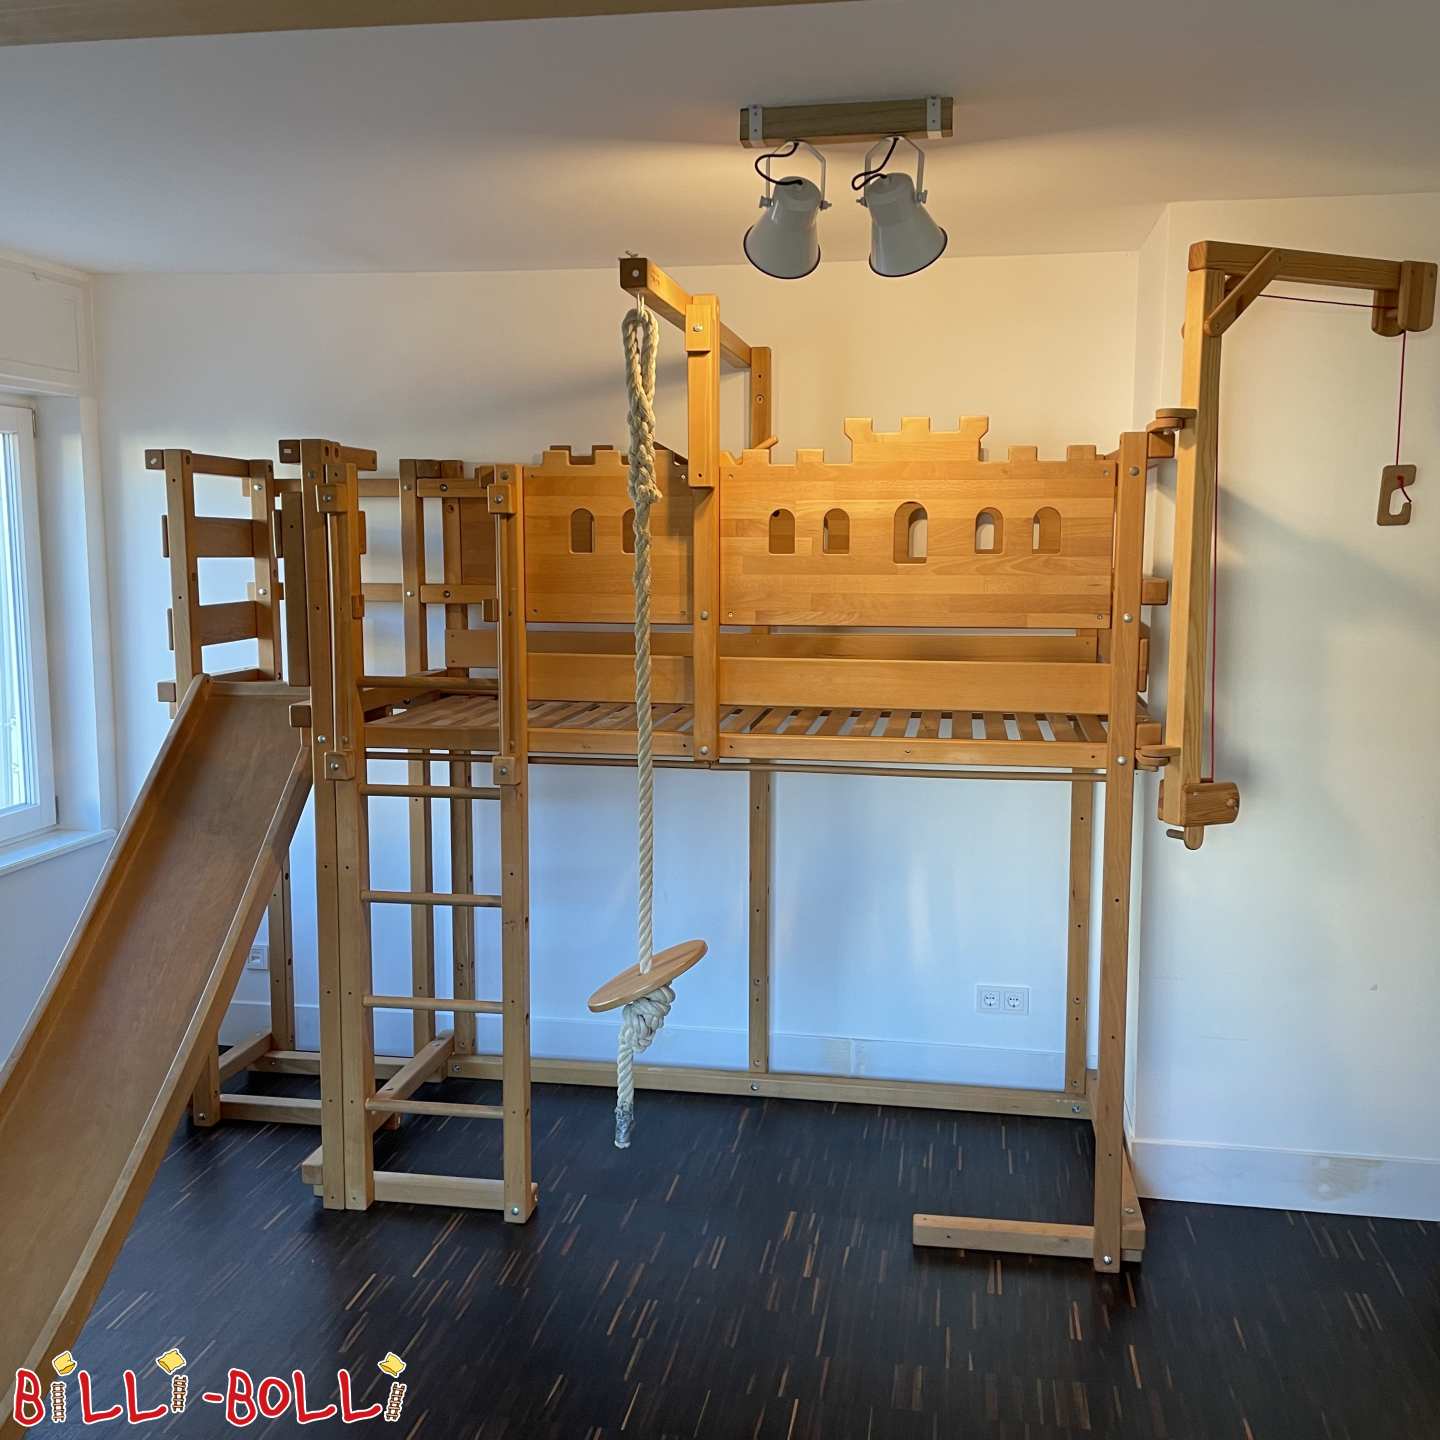 Podstrešna postelja Billi-Bolli Pirate/Knight z veliko dodatkov (Kategorija: Uporabljena nadstropna postelja)